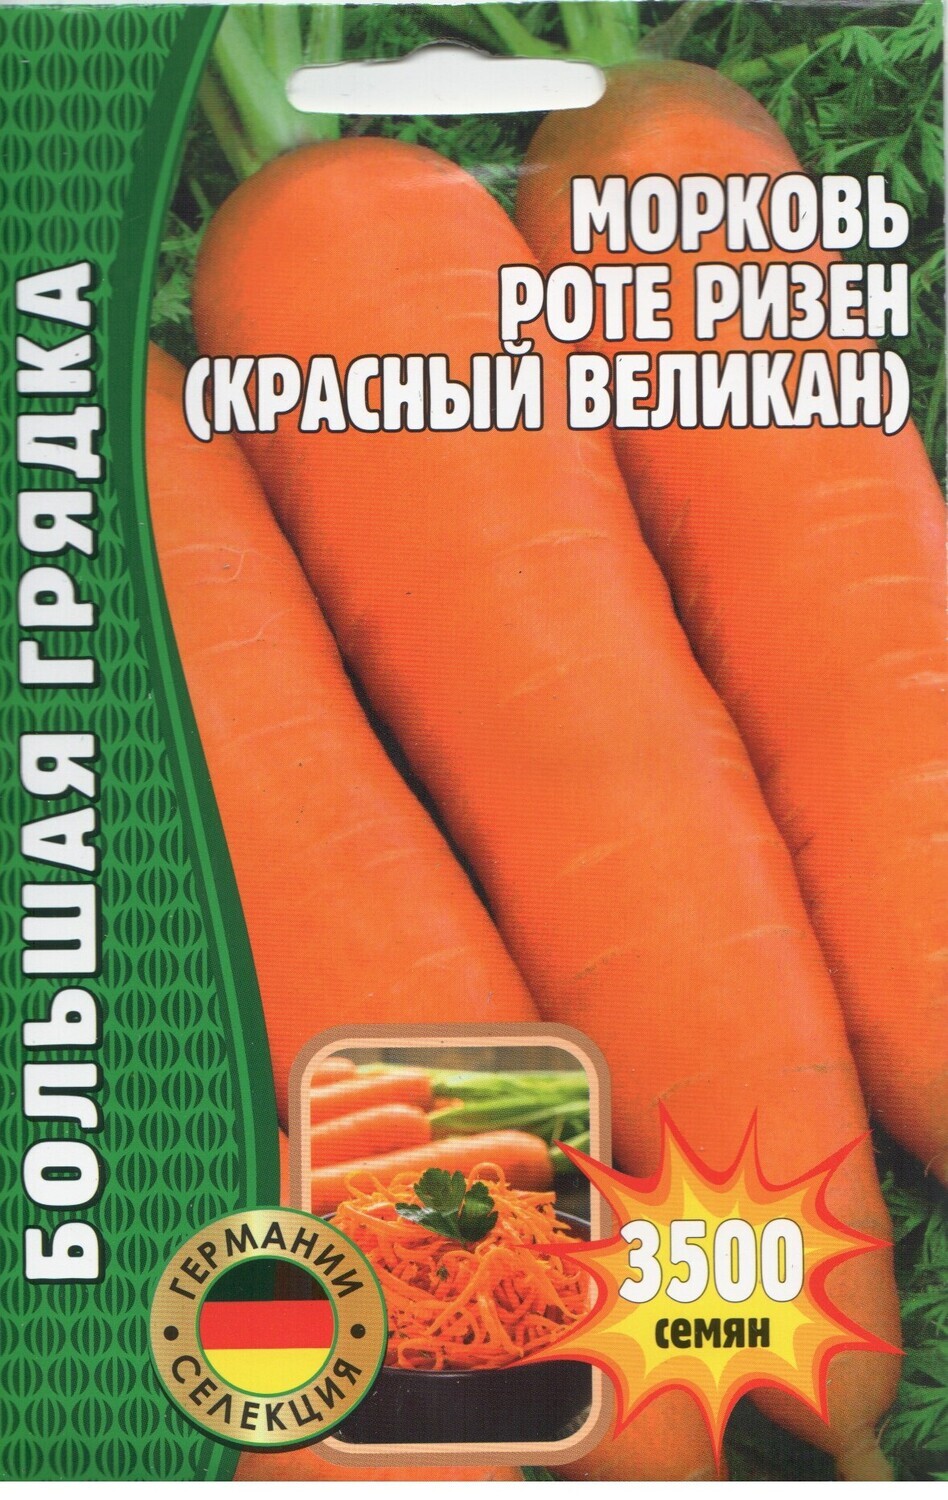 Морковь Роте ризен (Красный великан)